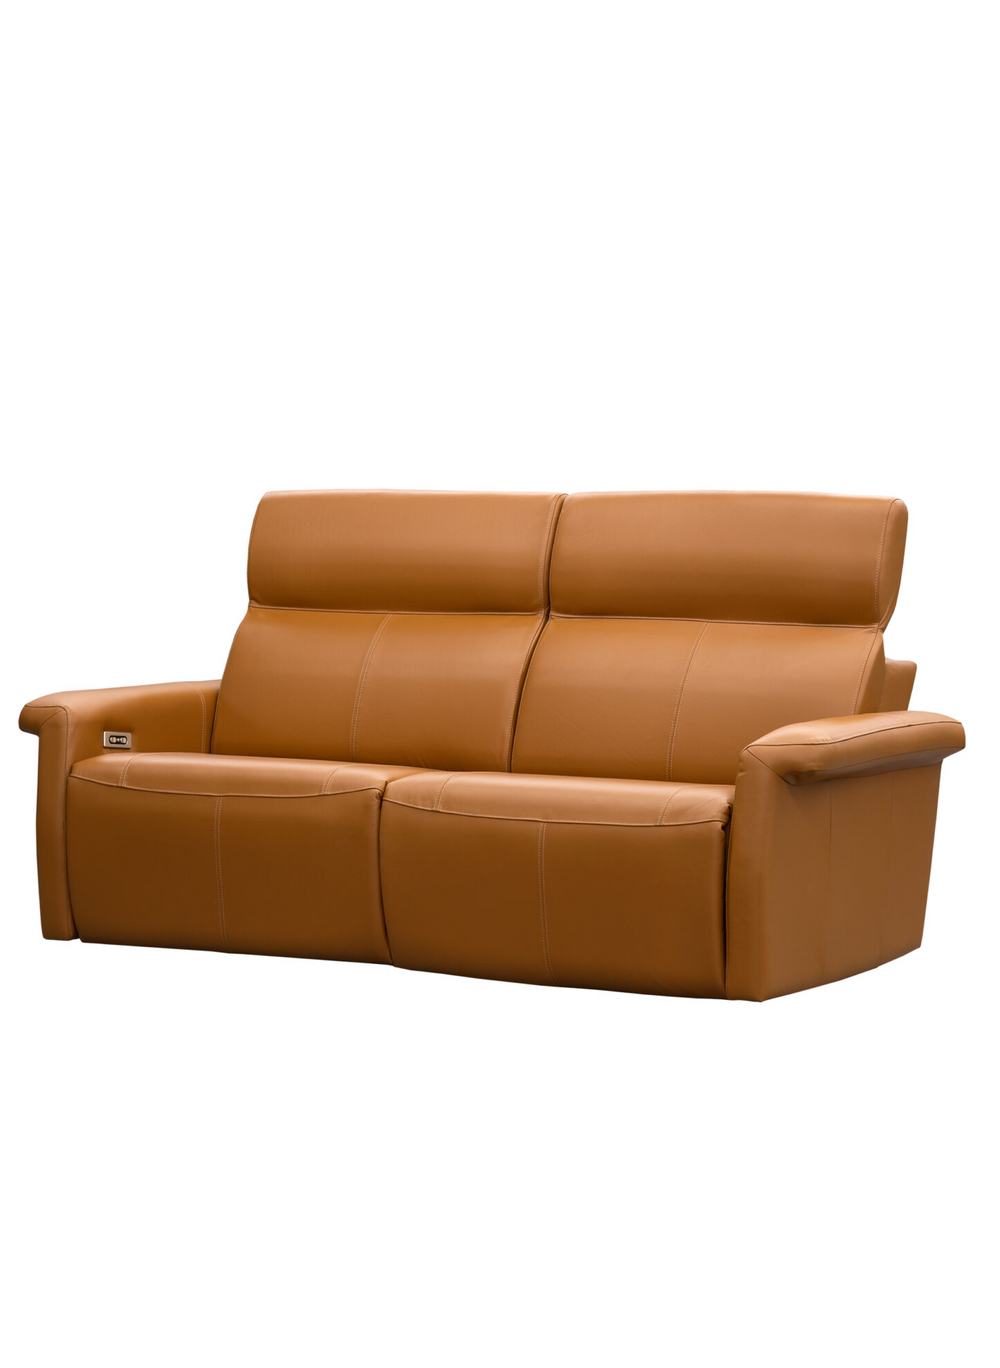 Elran - 3000 - 2 Seat Sofa